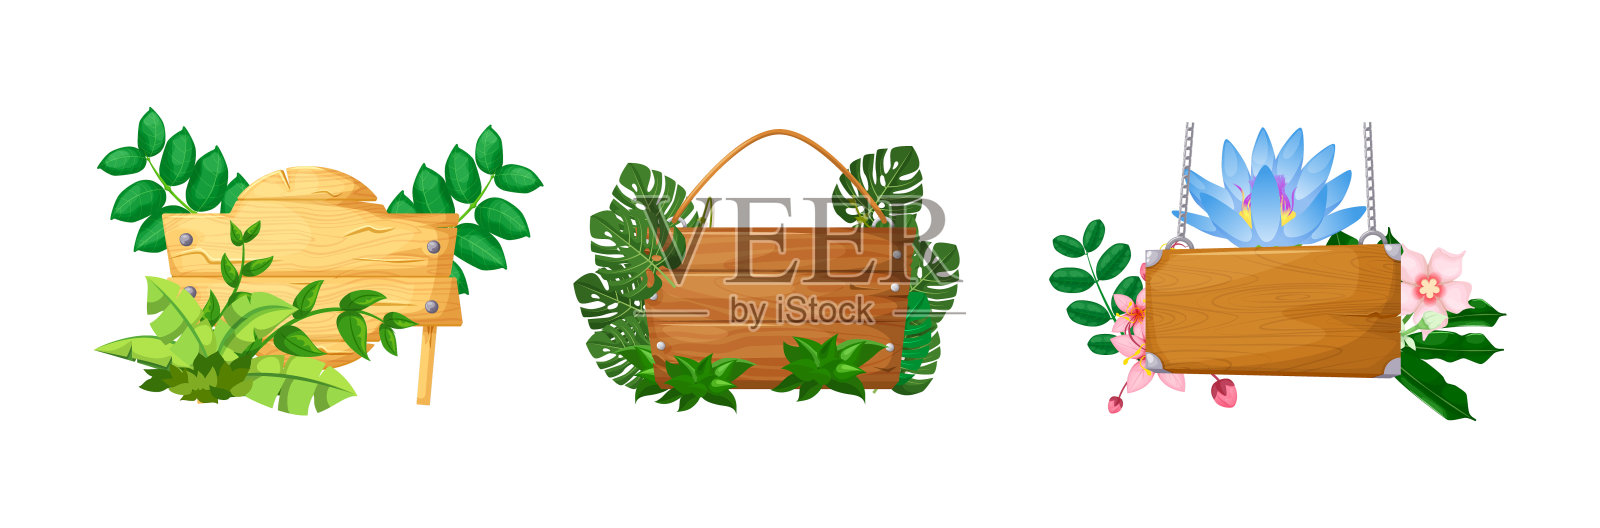 藤本植物的枝条框架和热带雨林的叶花插画图片素材